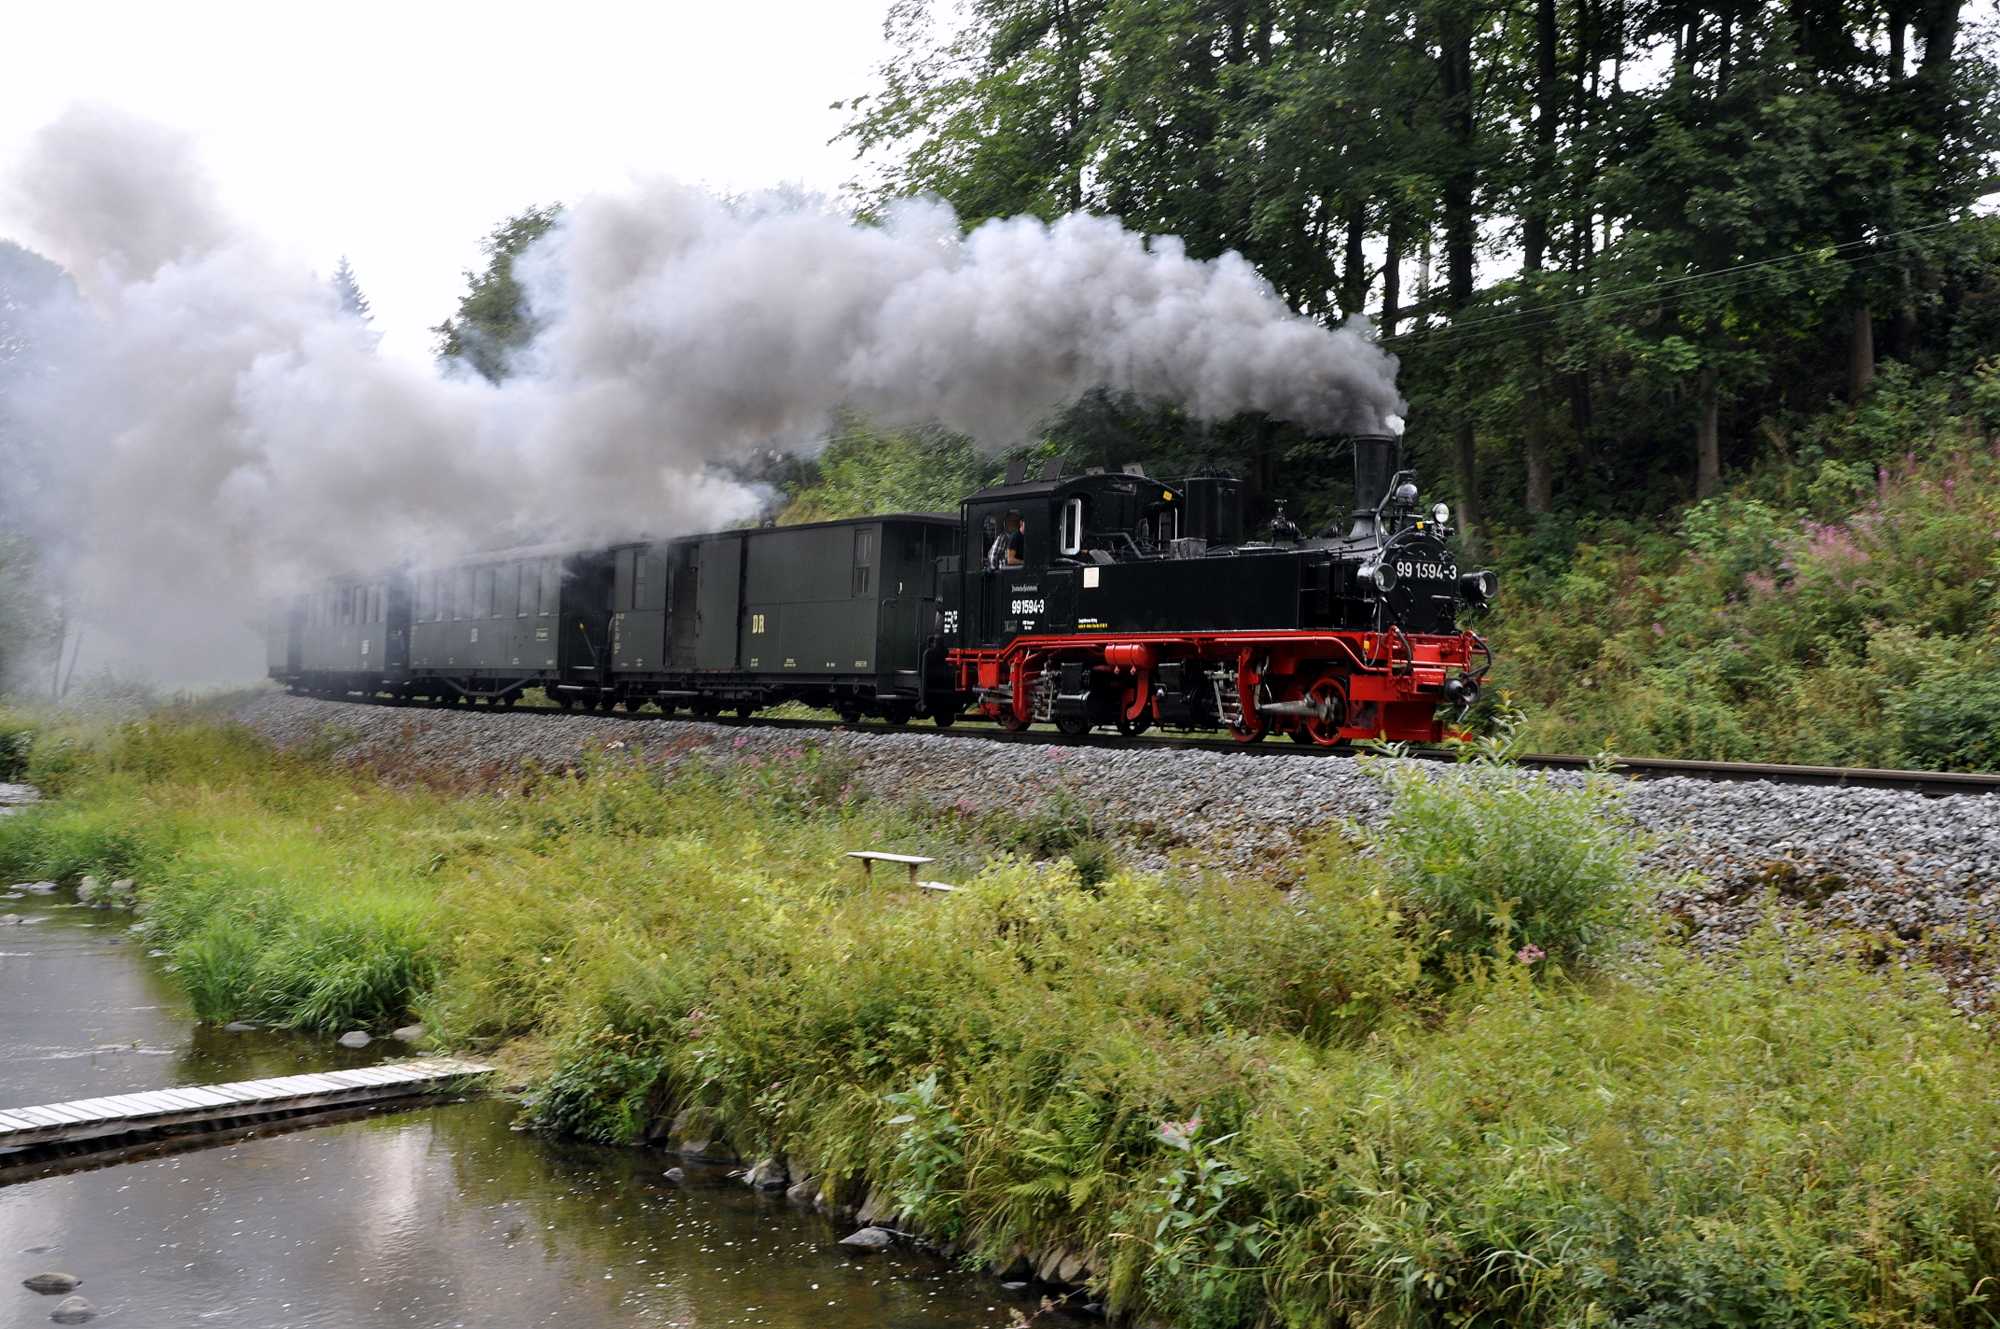 99 1594-3 zog am Wochenende des Wildbachfestes die Züge auf der Museumsbahn zwischen Steinbach und Jöhstadt